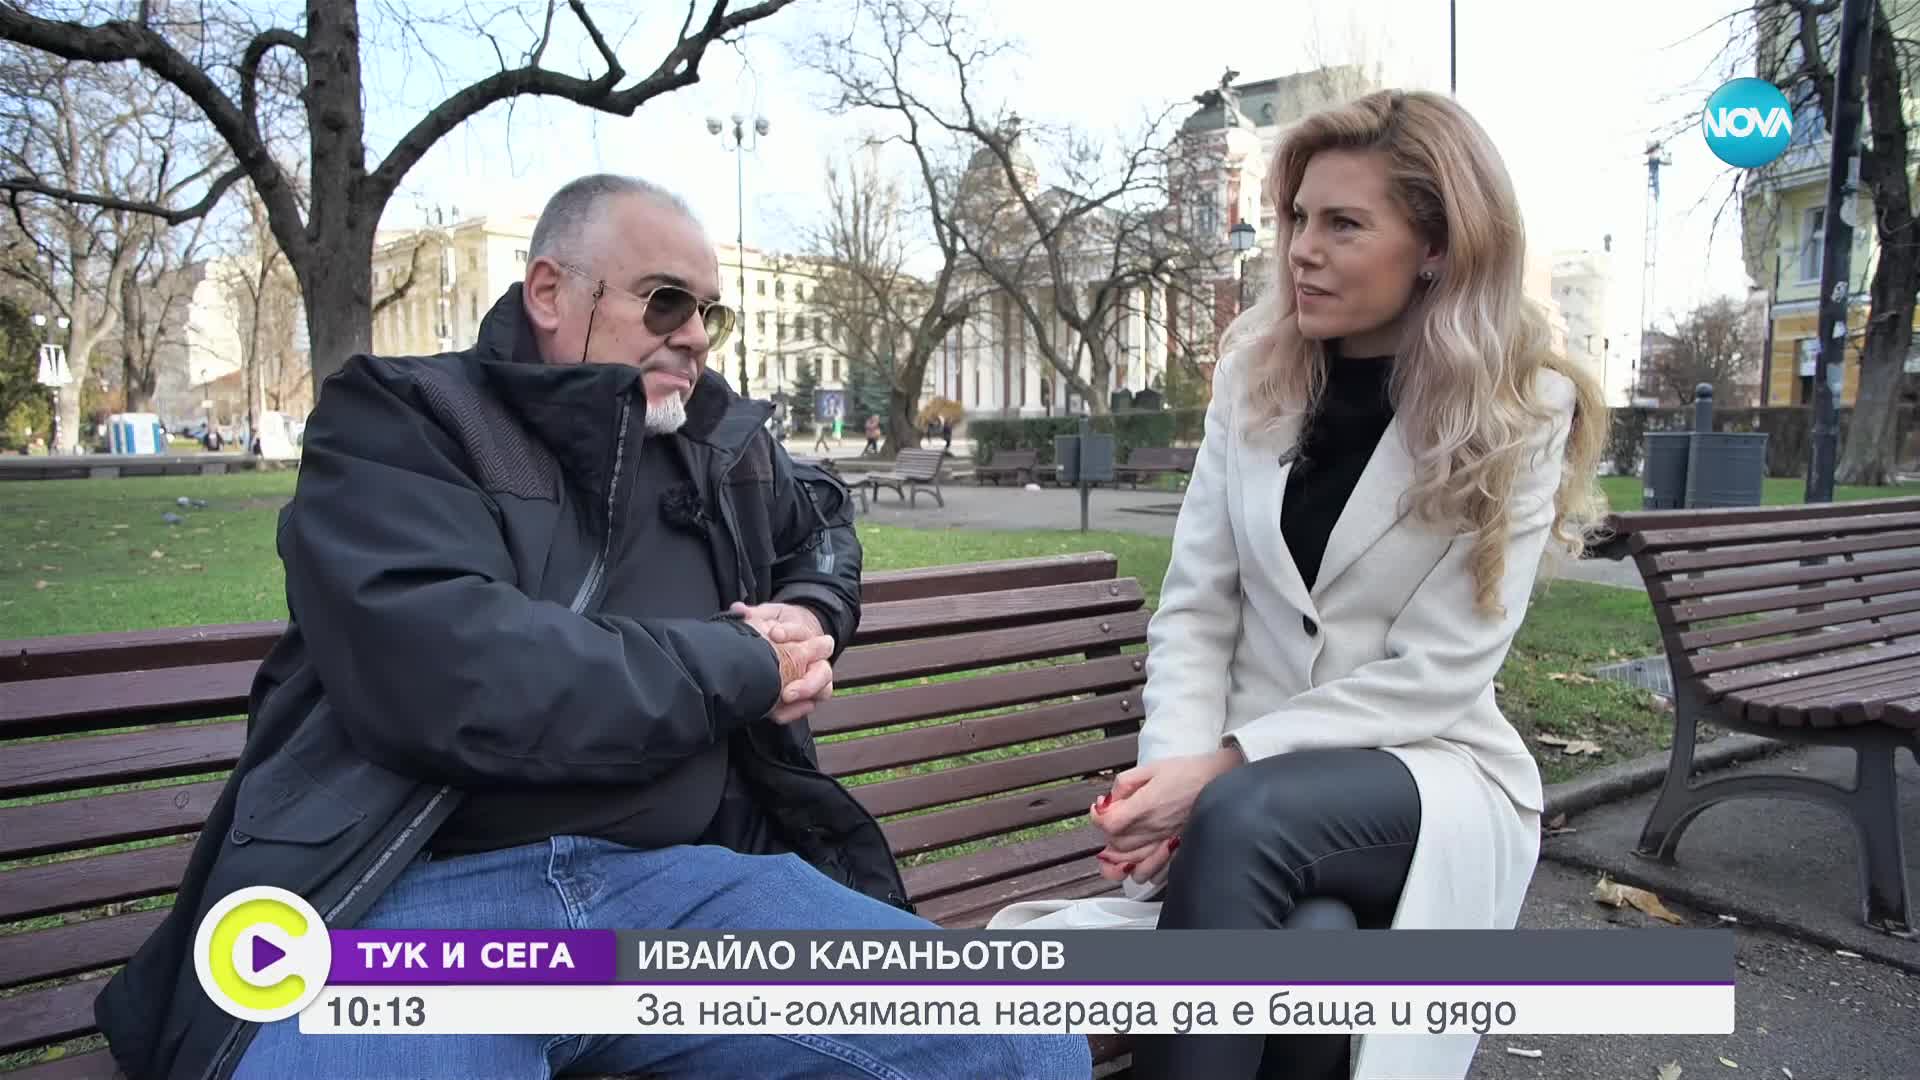 "ТУК И СЕГА": Ивайло Караньотов за активната гражданска позиция и ролята на син, съпруг, баща и дядо